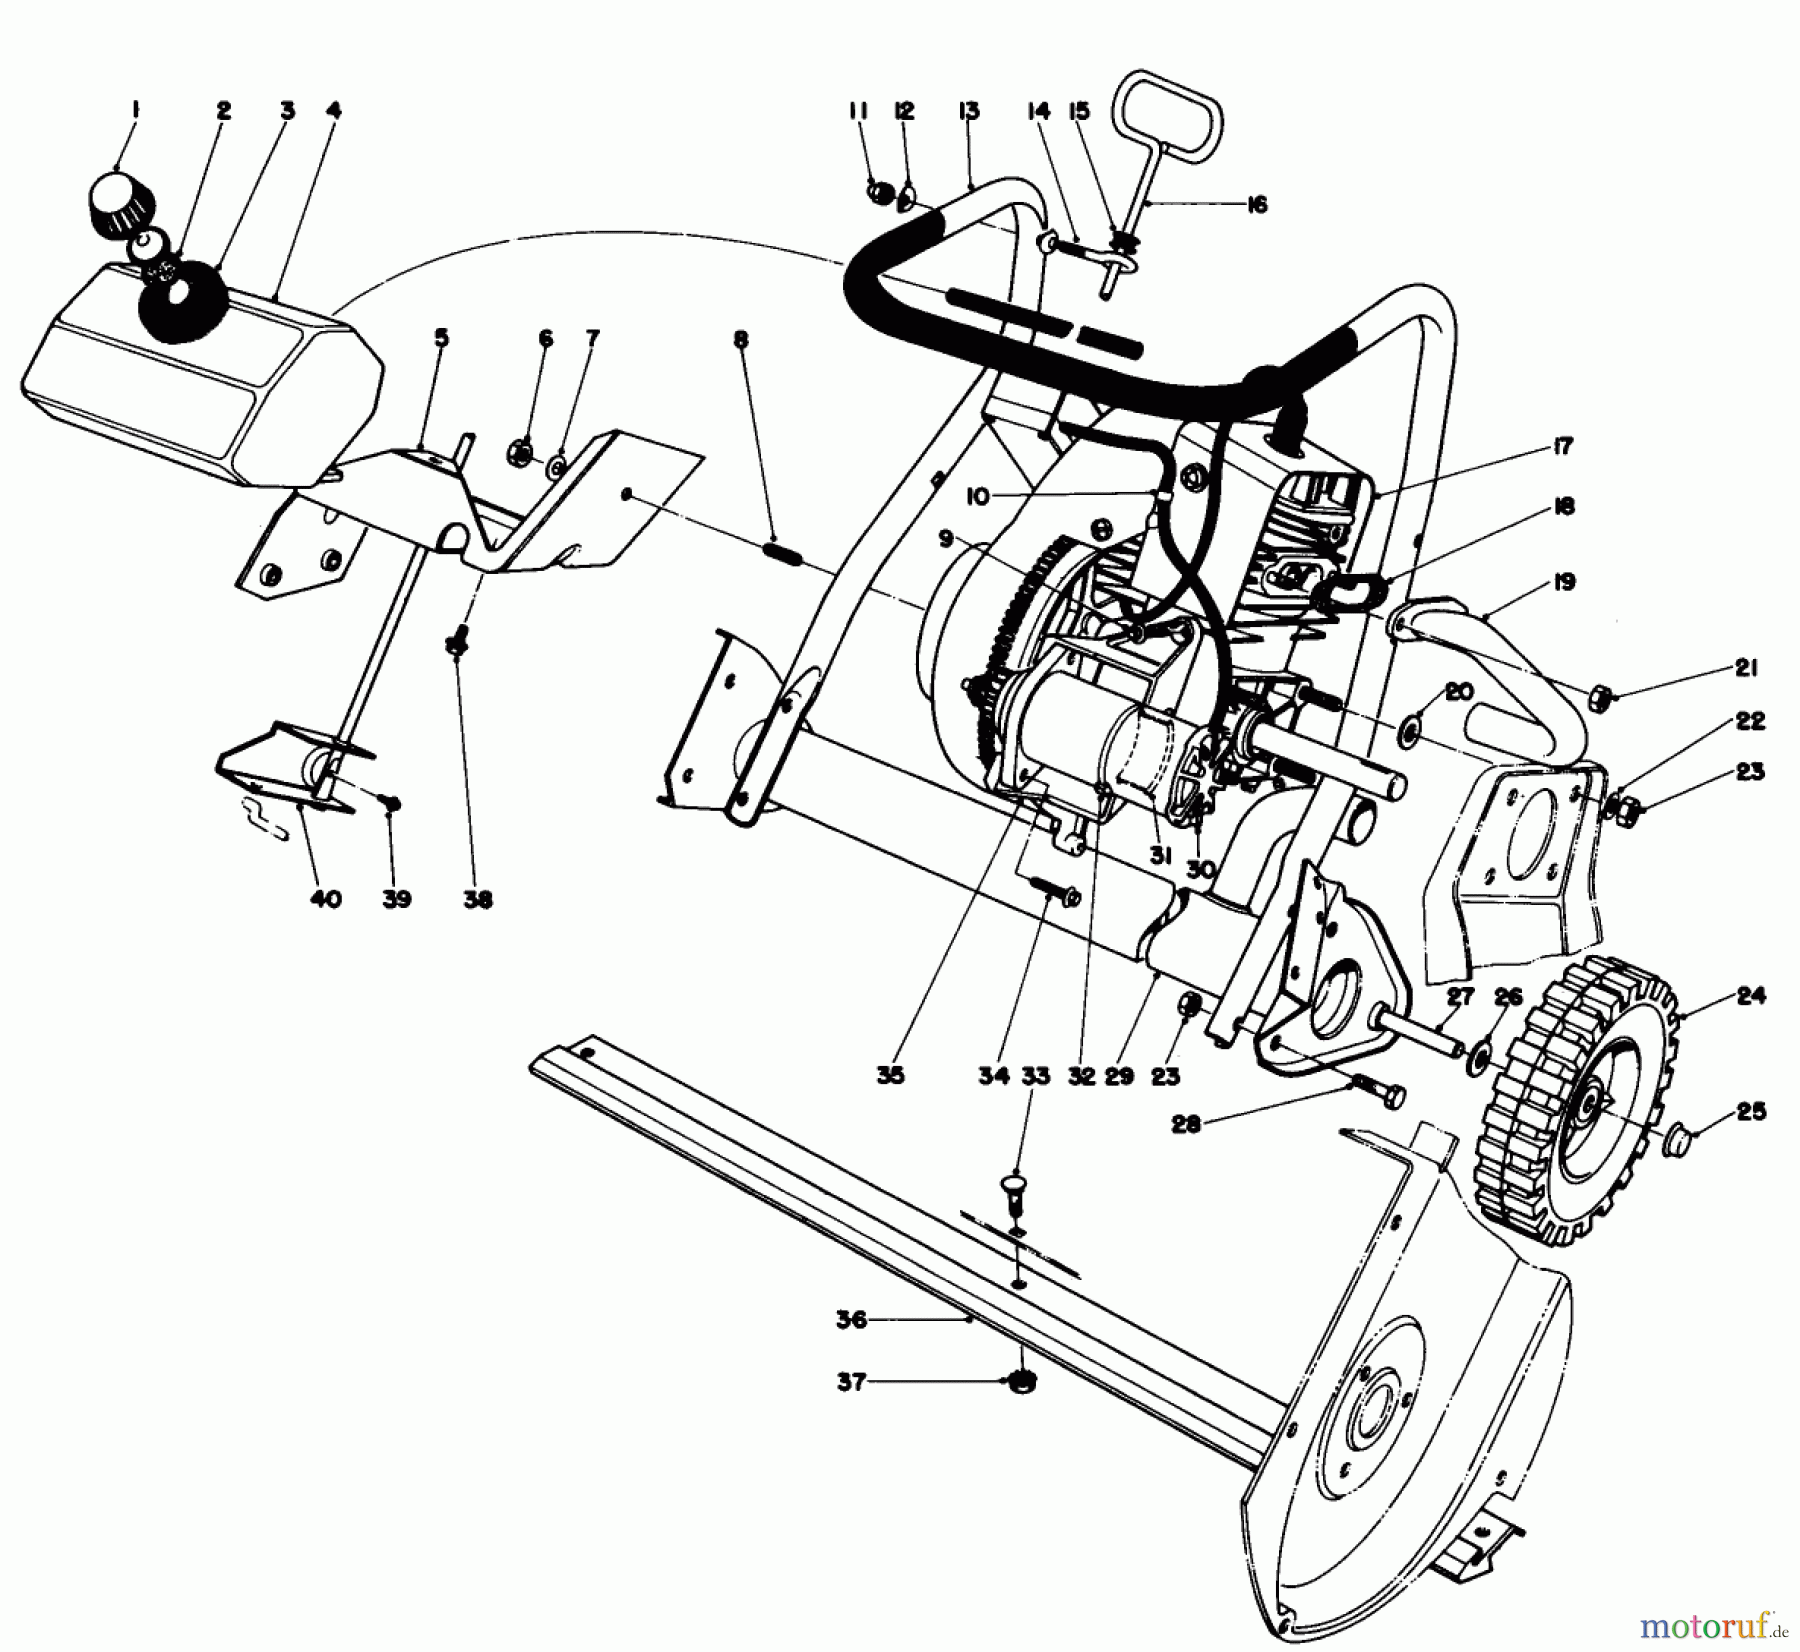  Toro Neu Snow Blowers/Snow Throwers Seite 1 38030 - Toro Snow Master 20, 1978 (8000001-8999999) ENGINE ASSEMBLY (MODEL 38030)